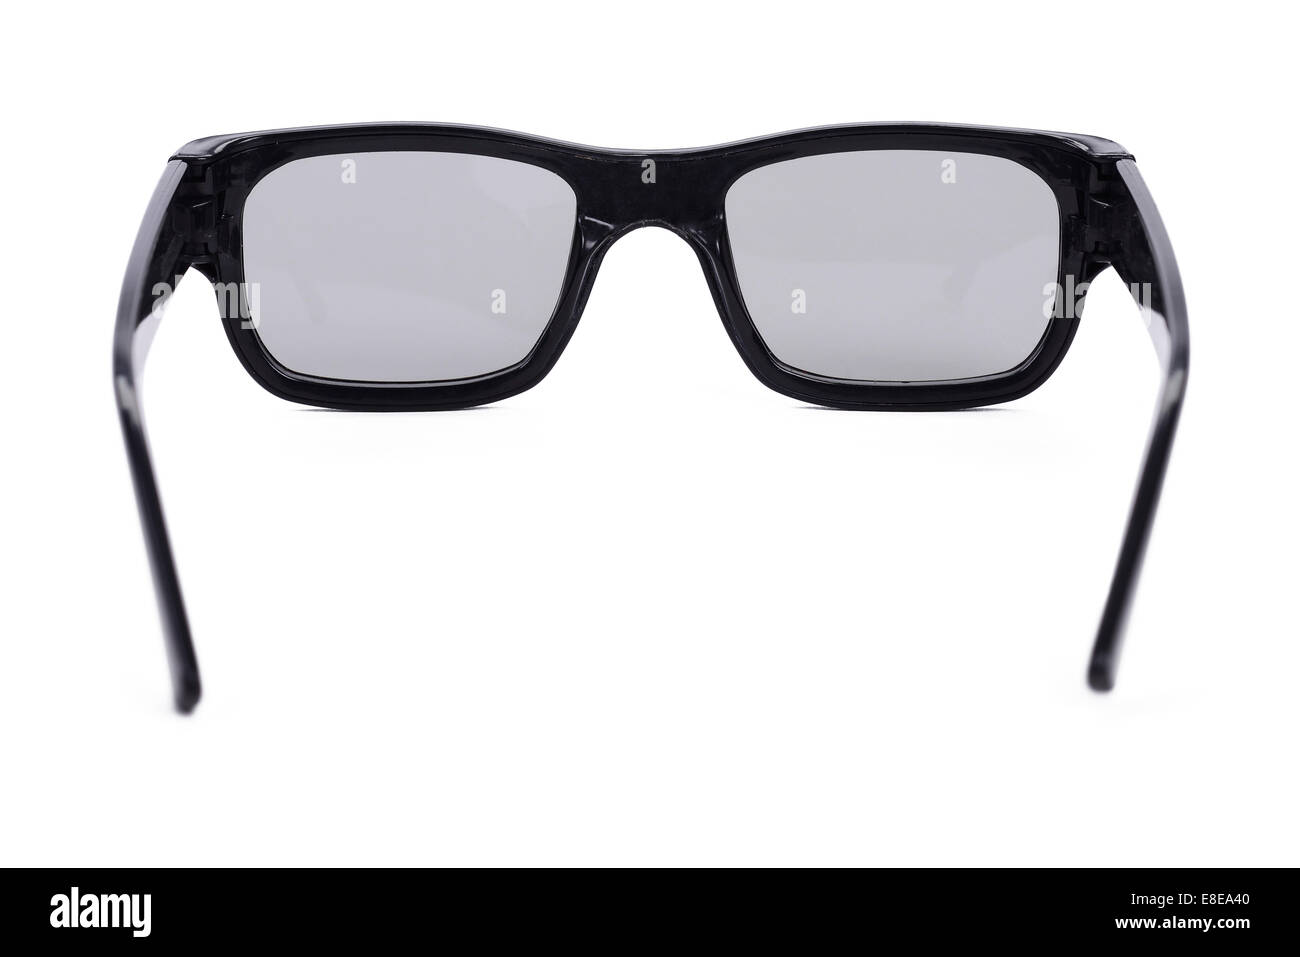 Pair of polarised 3d glasses Stock Photo